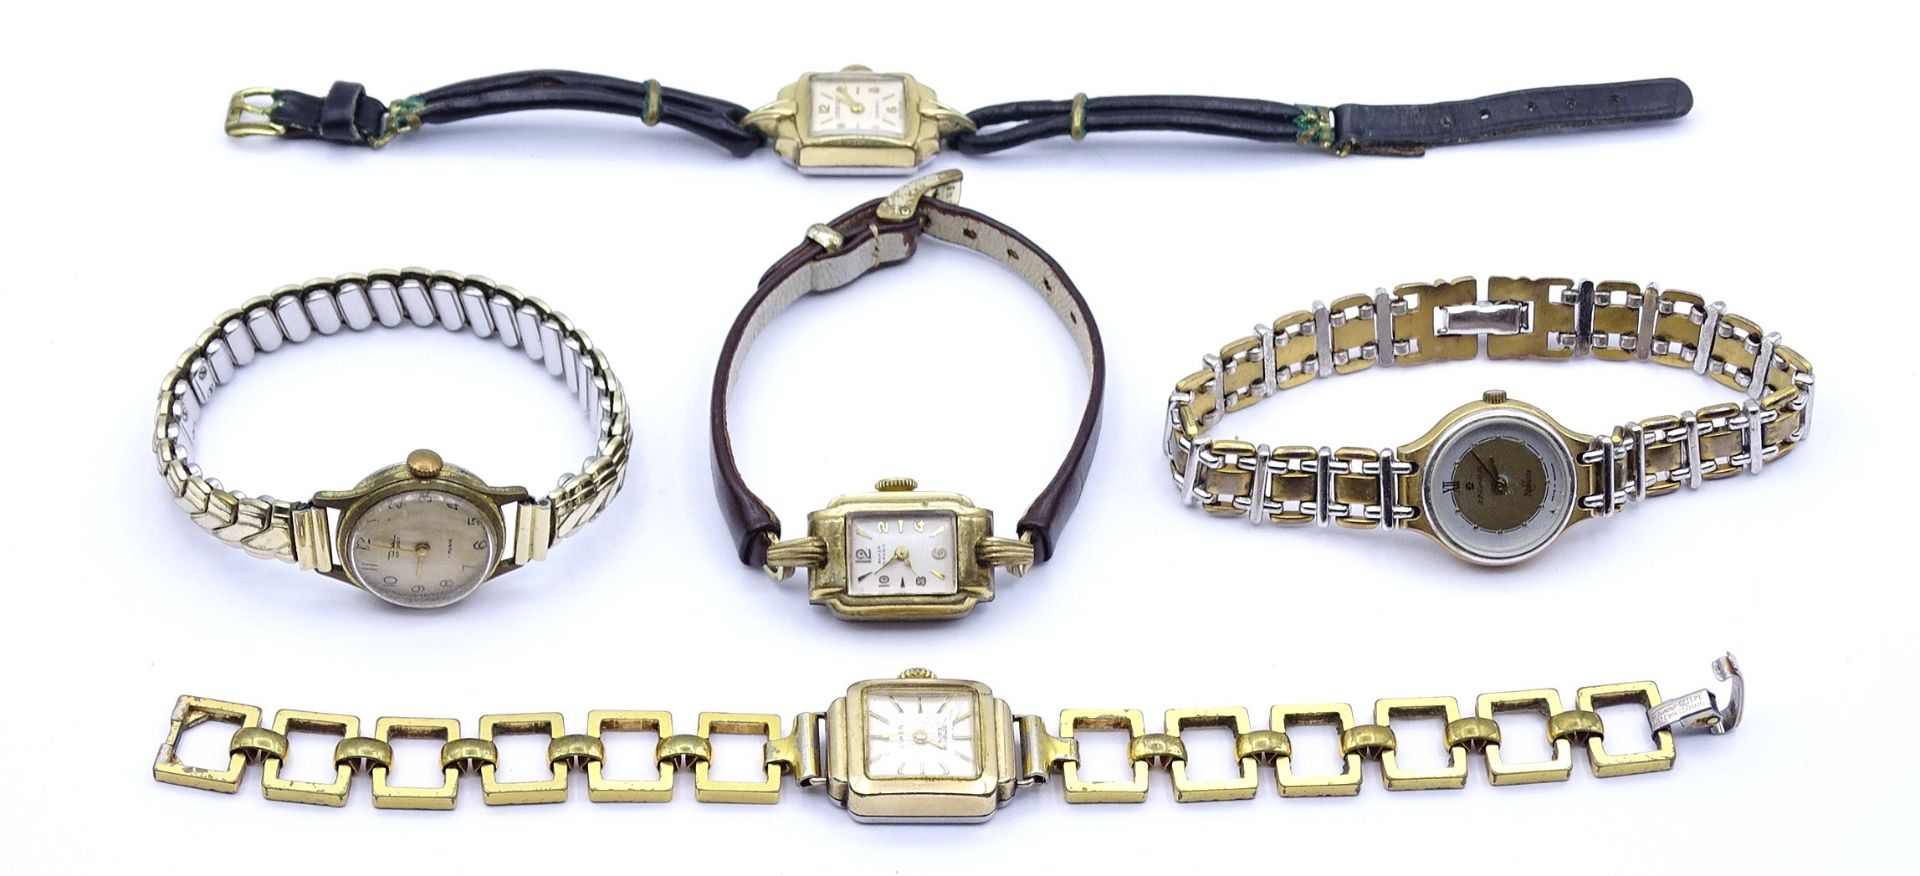 5x Damen Armbanduhren, mechanisch und Quartz, 2x Uhren laufen, Alters- und Gebrauchsspuren